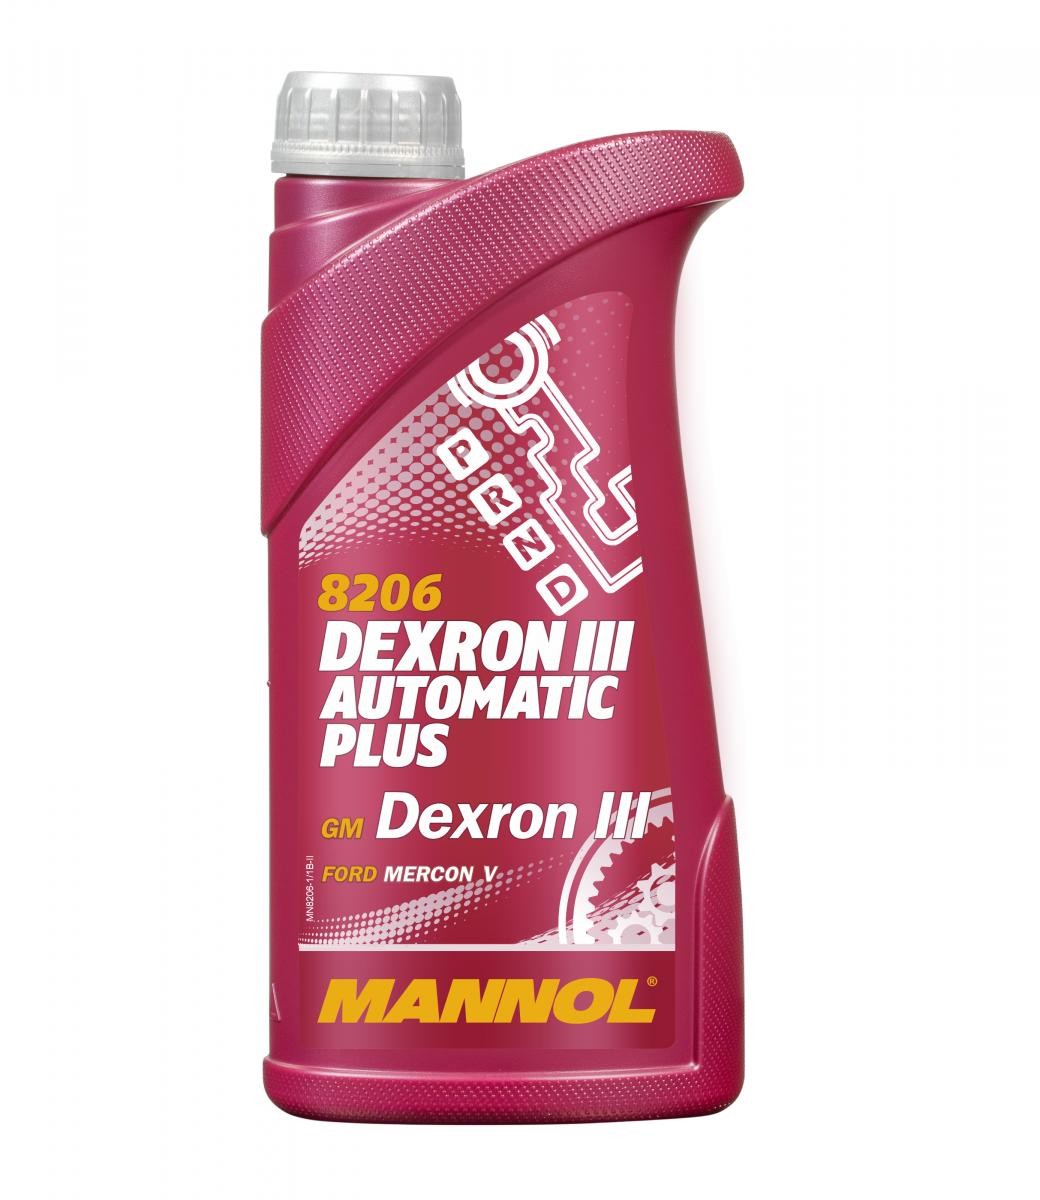 MANNOL Dexron III, Automatic Plus MN8206-1 Automatikgetriebeöl ATF III, 1l, Rot